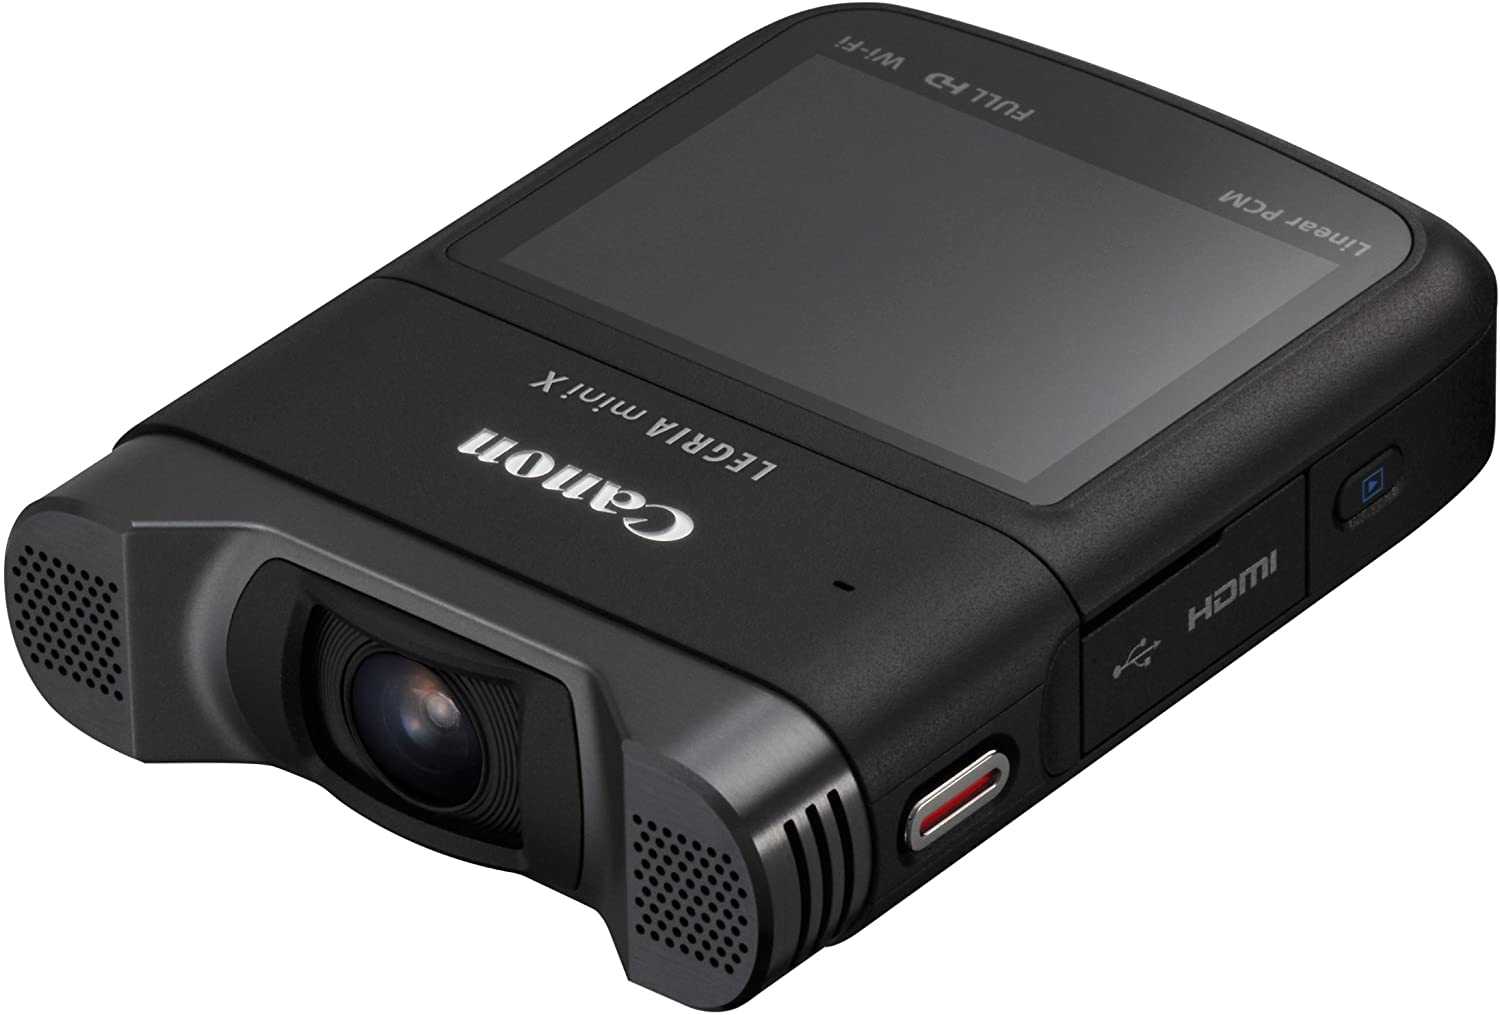 Canon legria mini (8455b044) (черный) - купить , скидки, цена, отзывы, обзор, характеристики - видеокамеры